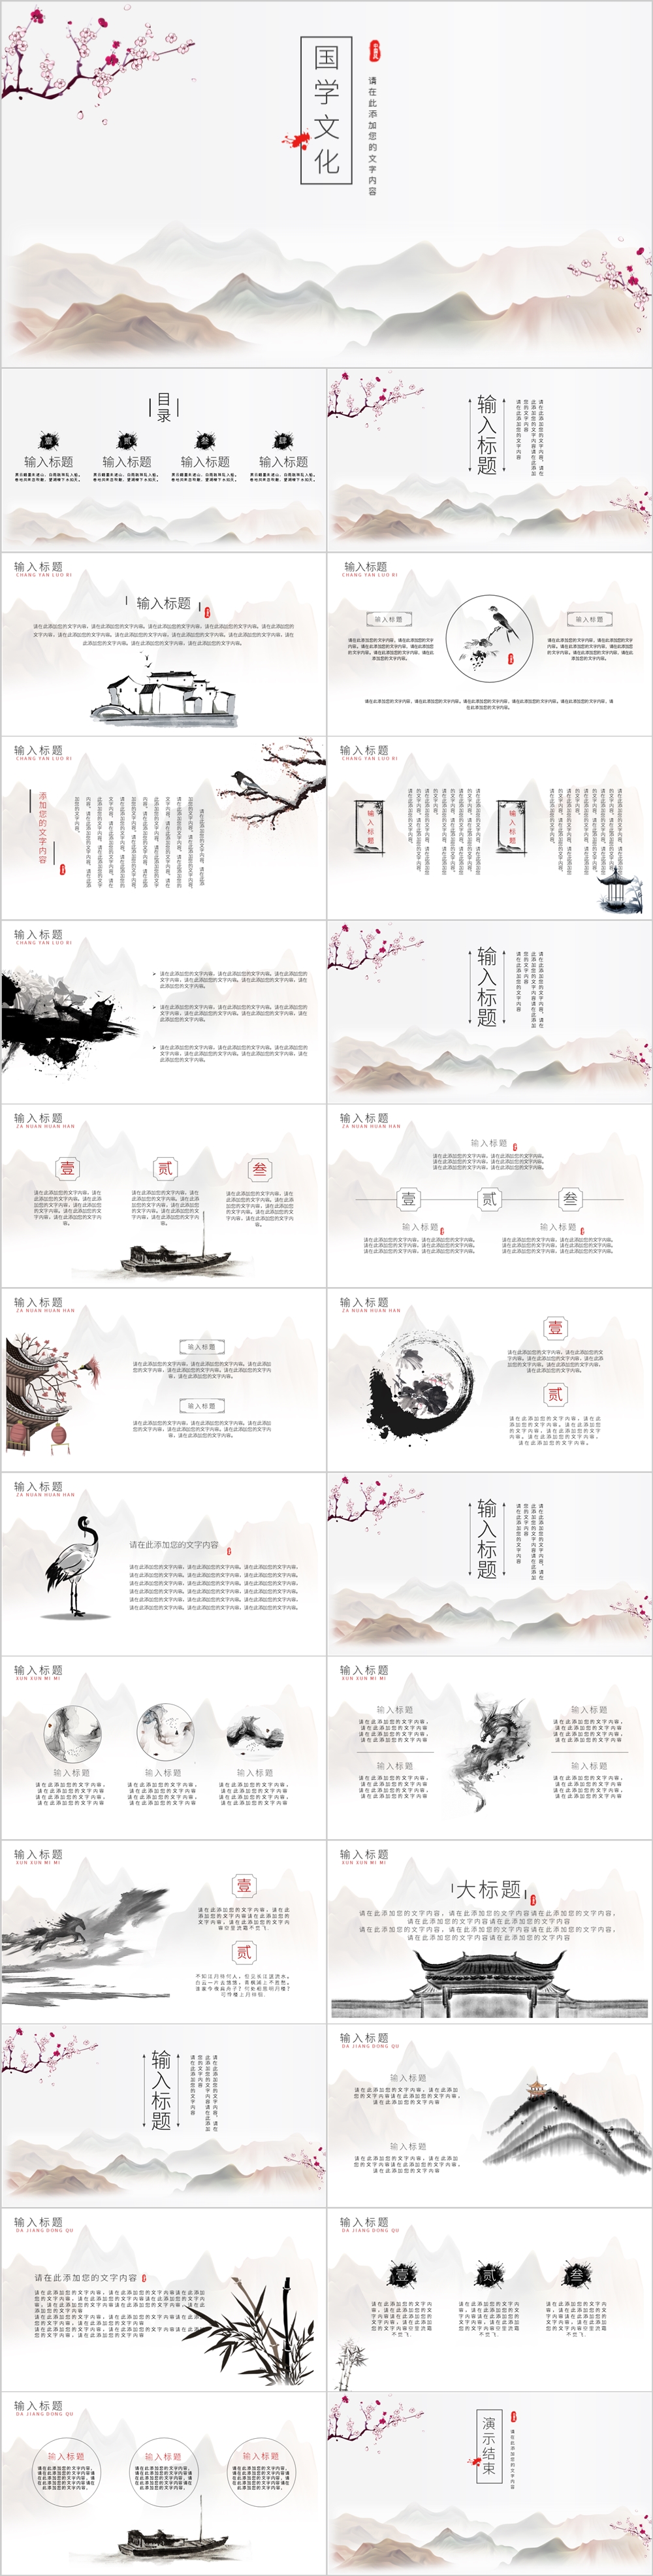 国学文化中国风通用ppt模板